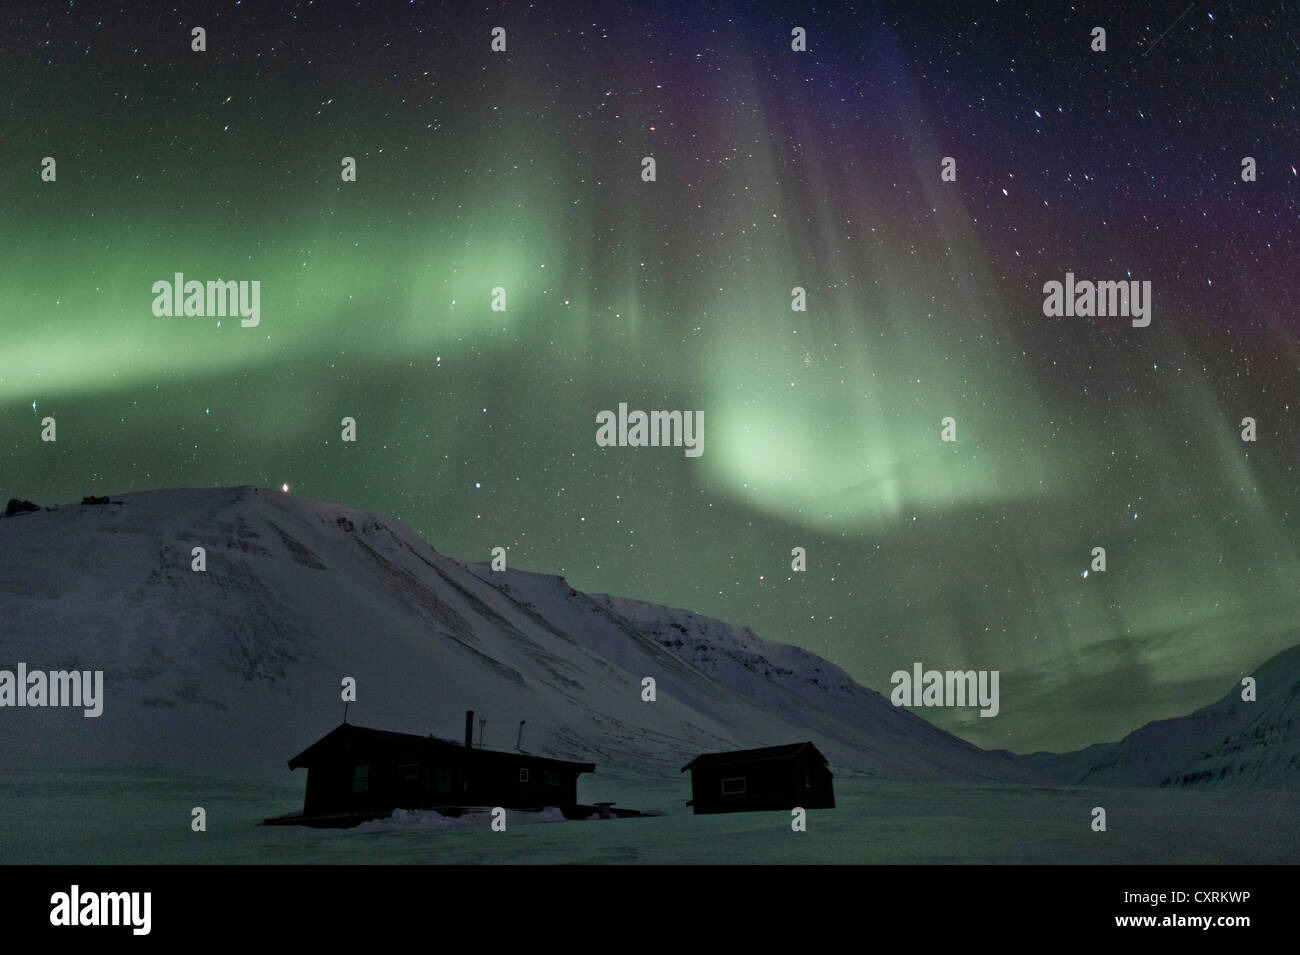 Green Northern Lights, Aurora Borealis, au-dessus de deux petites huttes dans un ciel étoilé, Adventdalen, Todalen, Longyearbyen, Spitsberg Banque D'Images